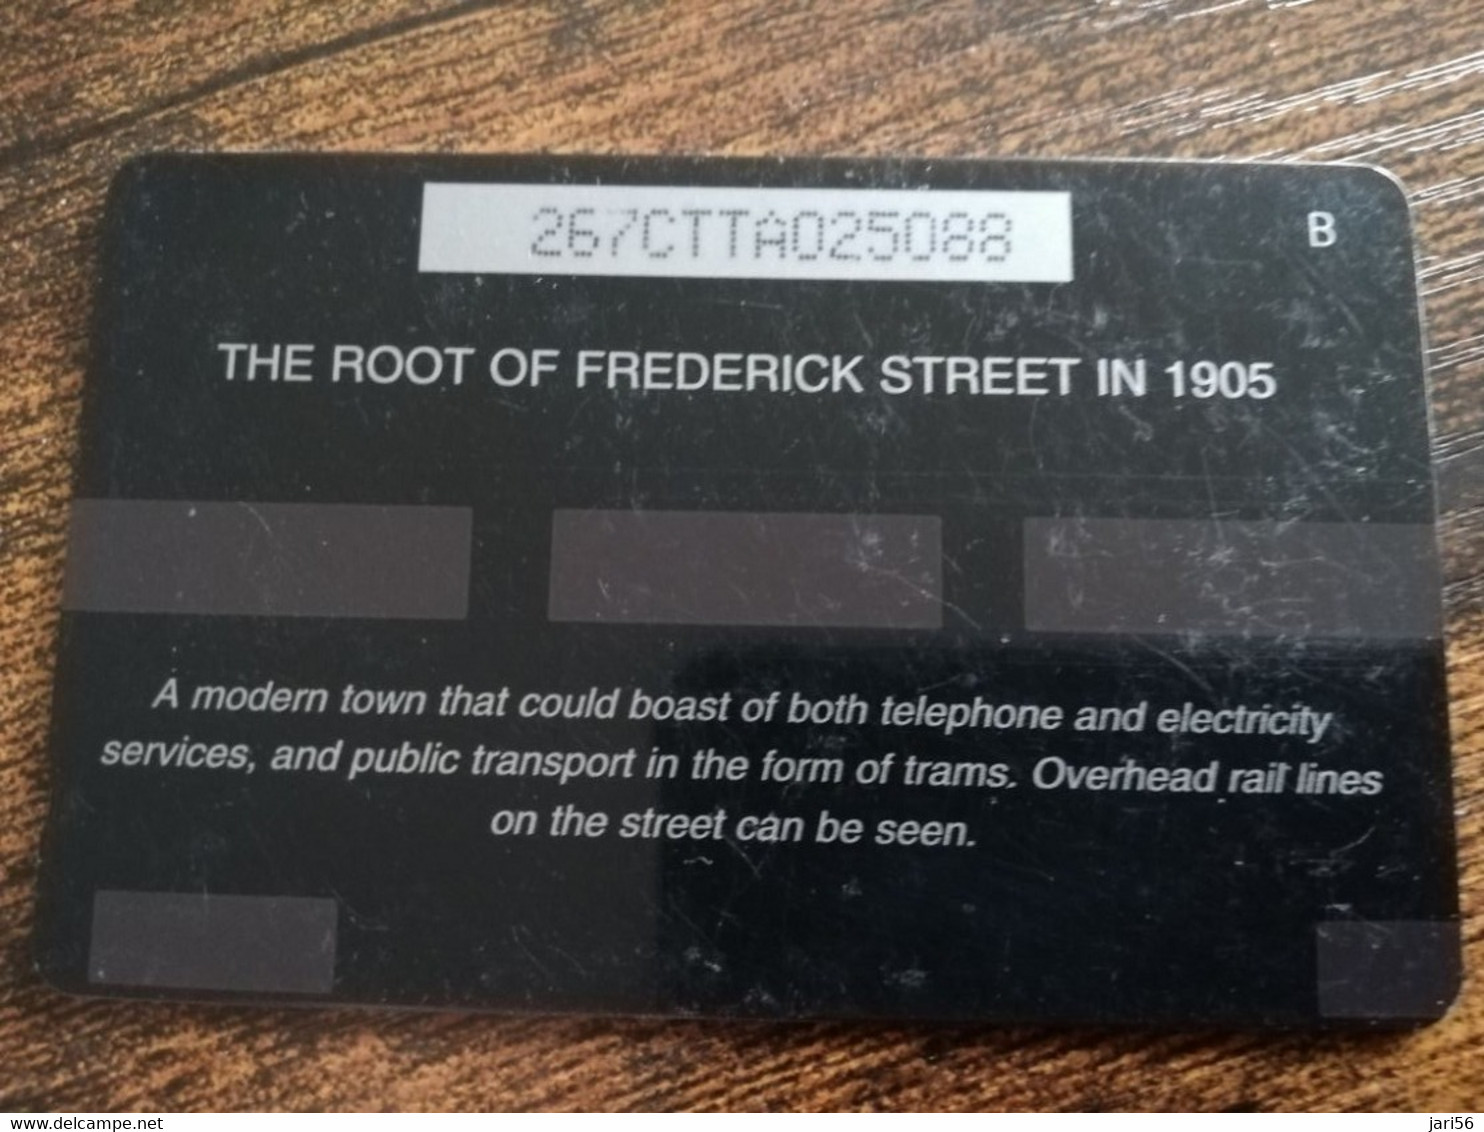 TRINIDAD & TOBAGO  GPT CARD    $20,-  267CCTA    THE ROOT OF FREDERICK STREET            Fine Used Card        ** 8911** - Trinidad & Tobago